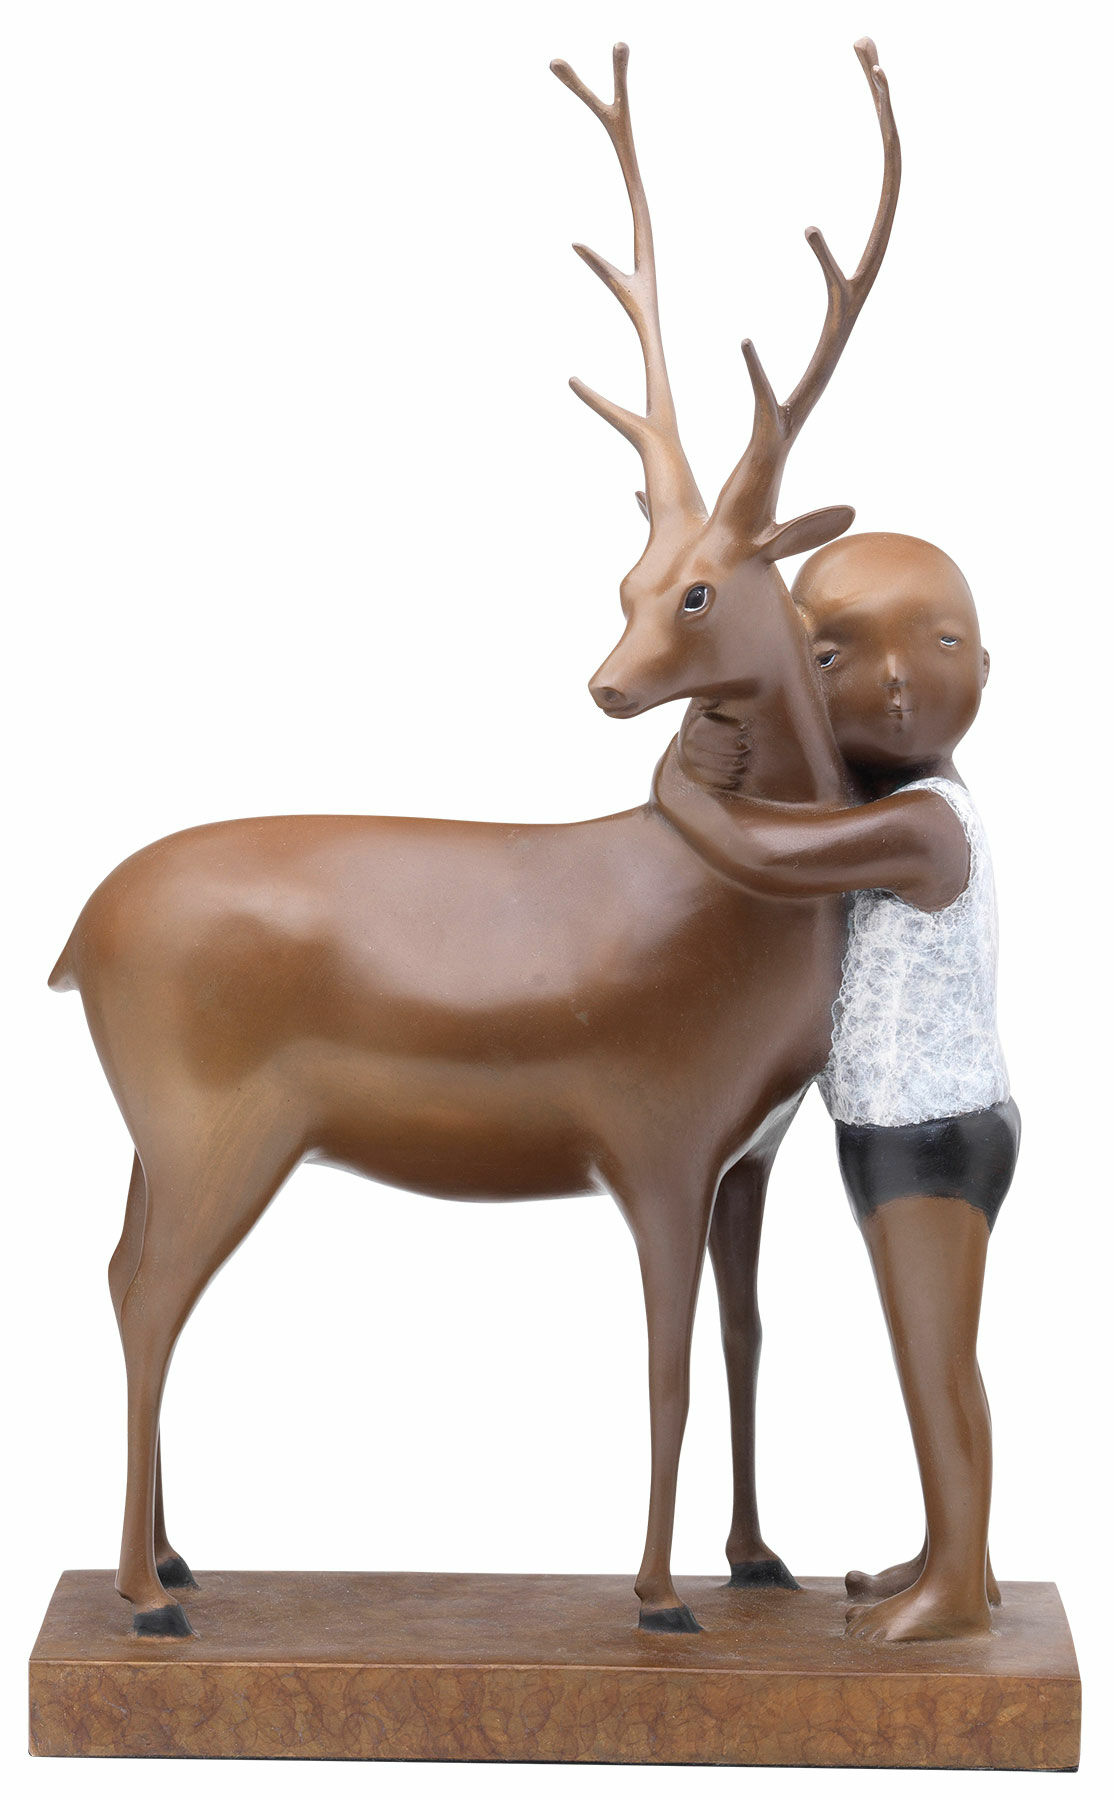 Sculpture "Best Friends" (2016), bronze by Zhang Hui